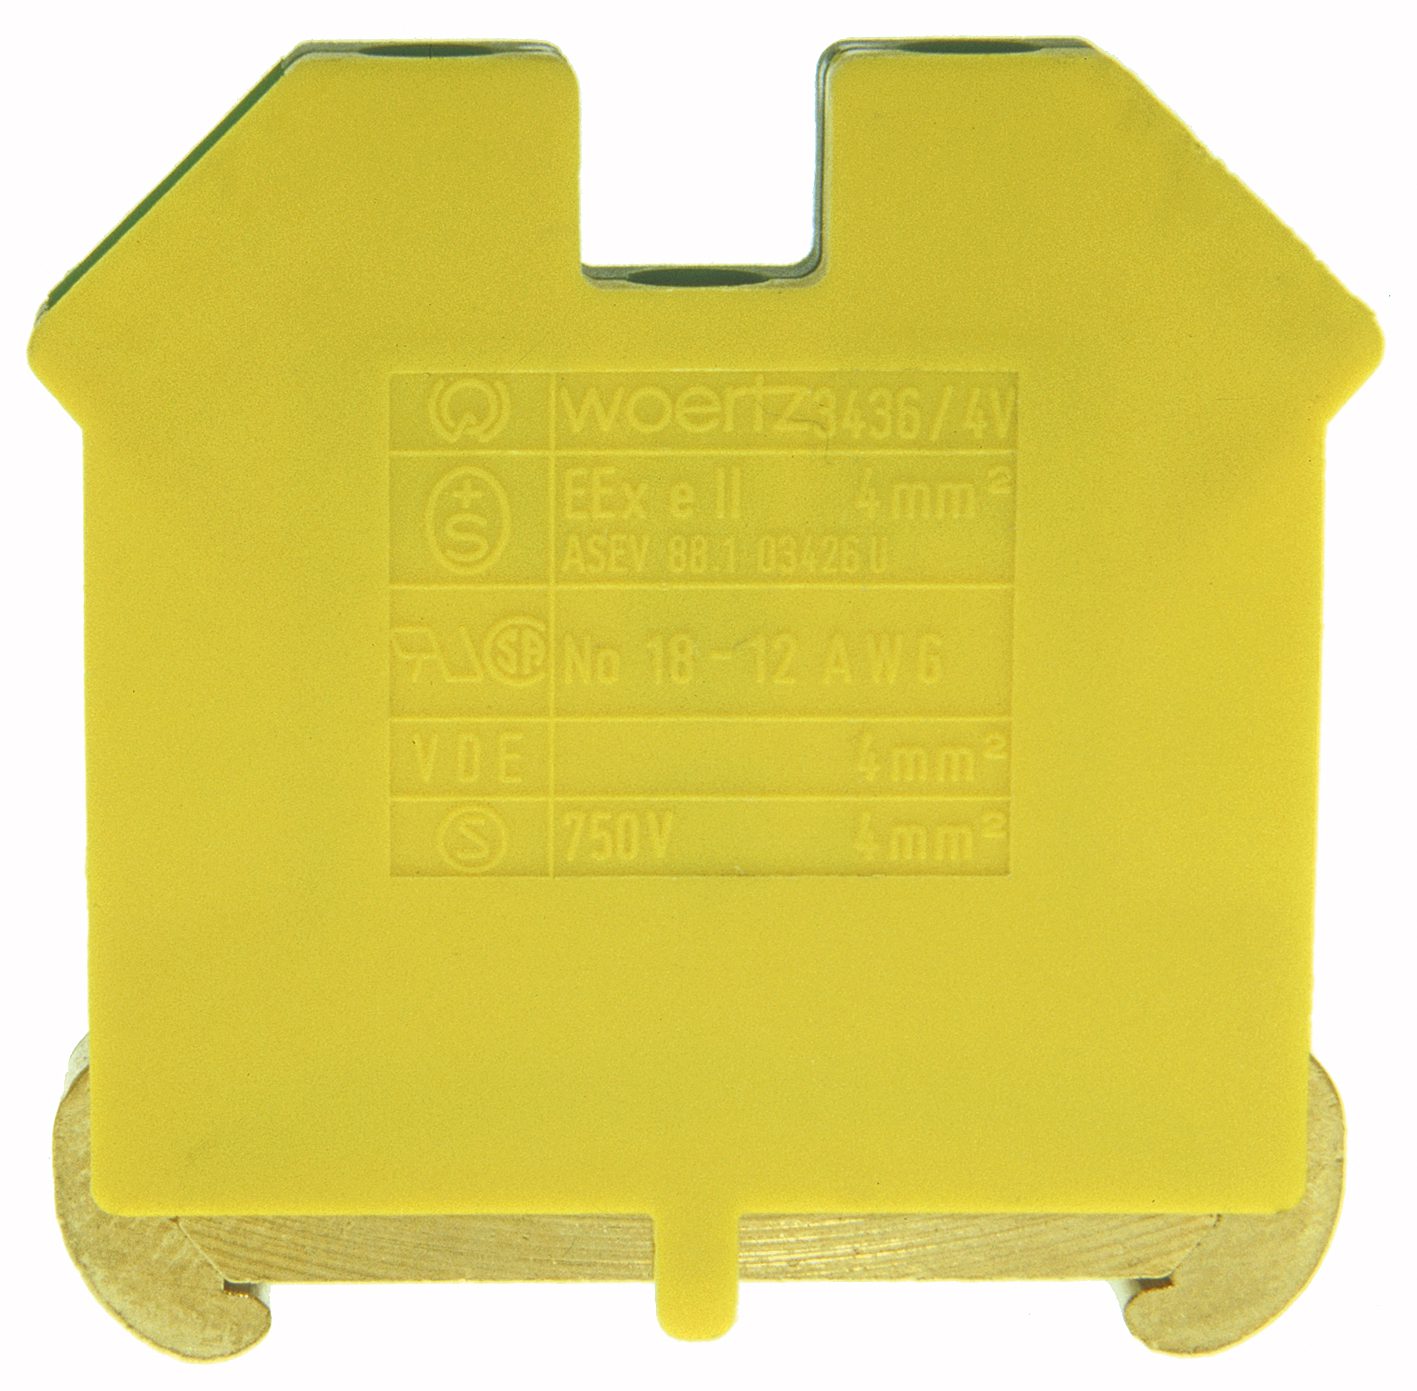 Beskyttelseslederklemme DIN35 4mm² grønn/gul